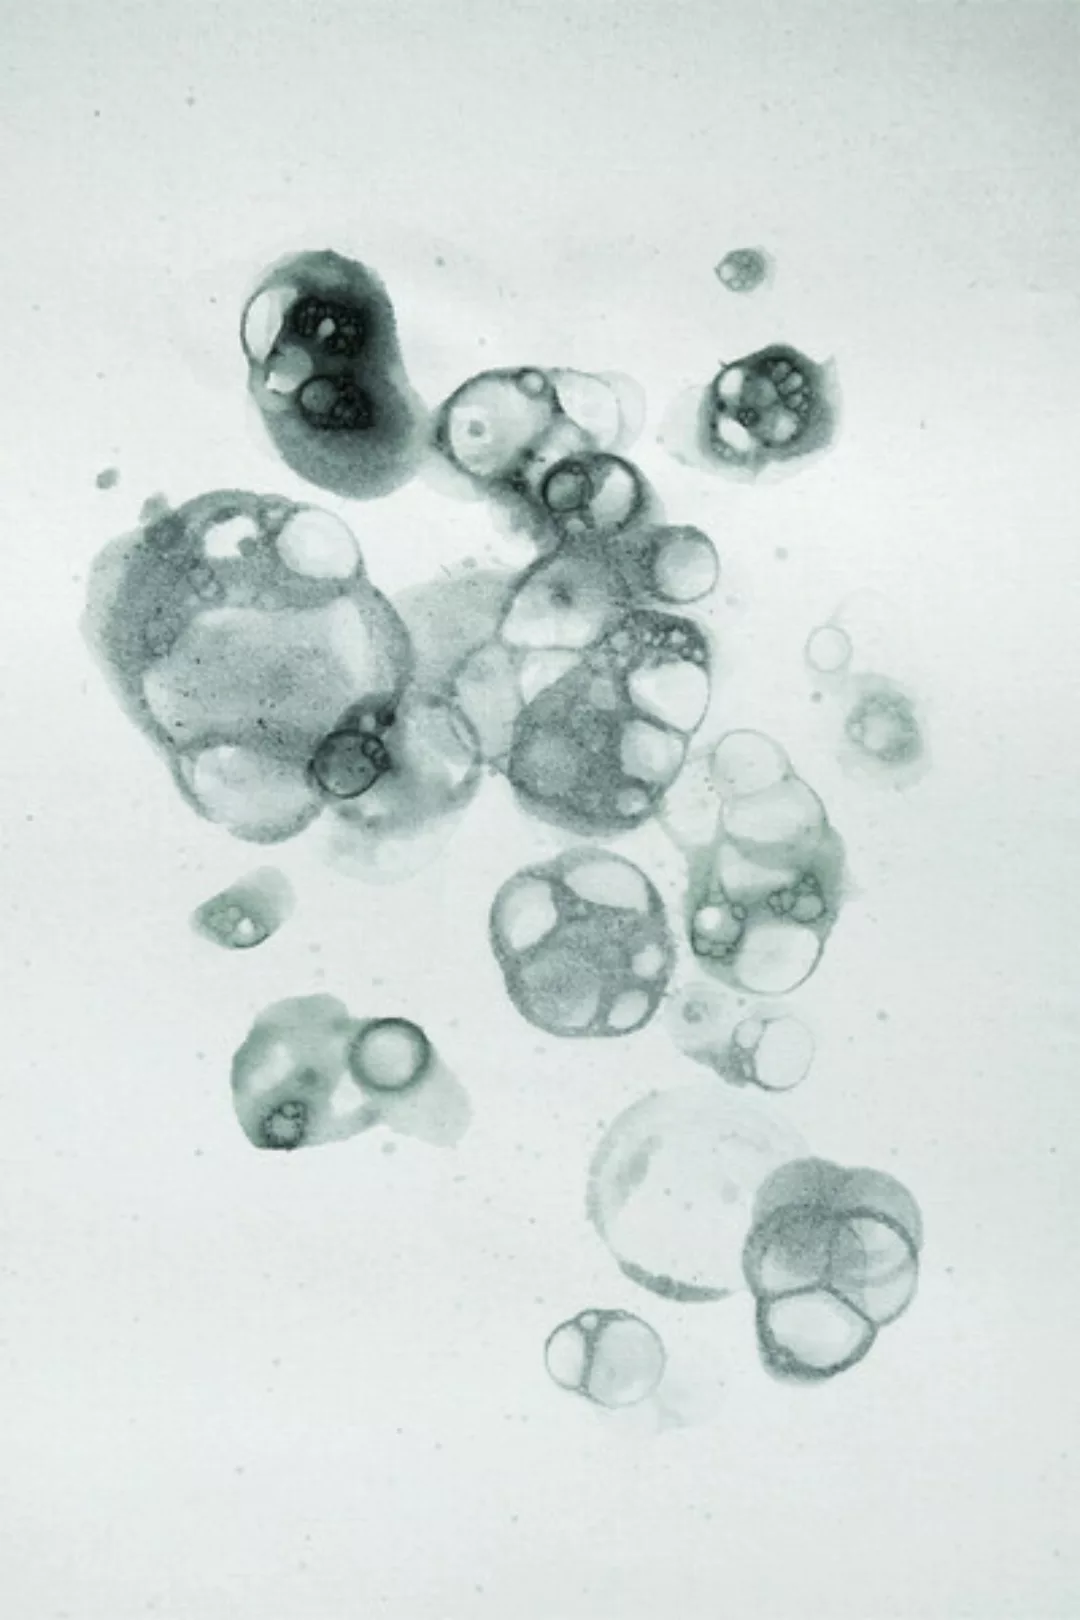 Poster / Leinwandbild - Aquarelle Bubbles - Black günstig online kaufen